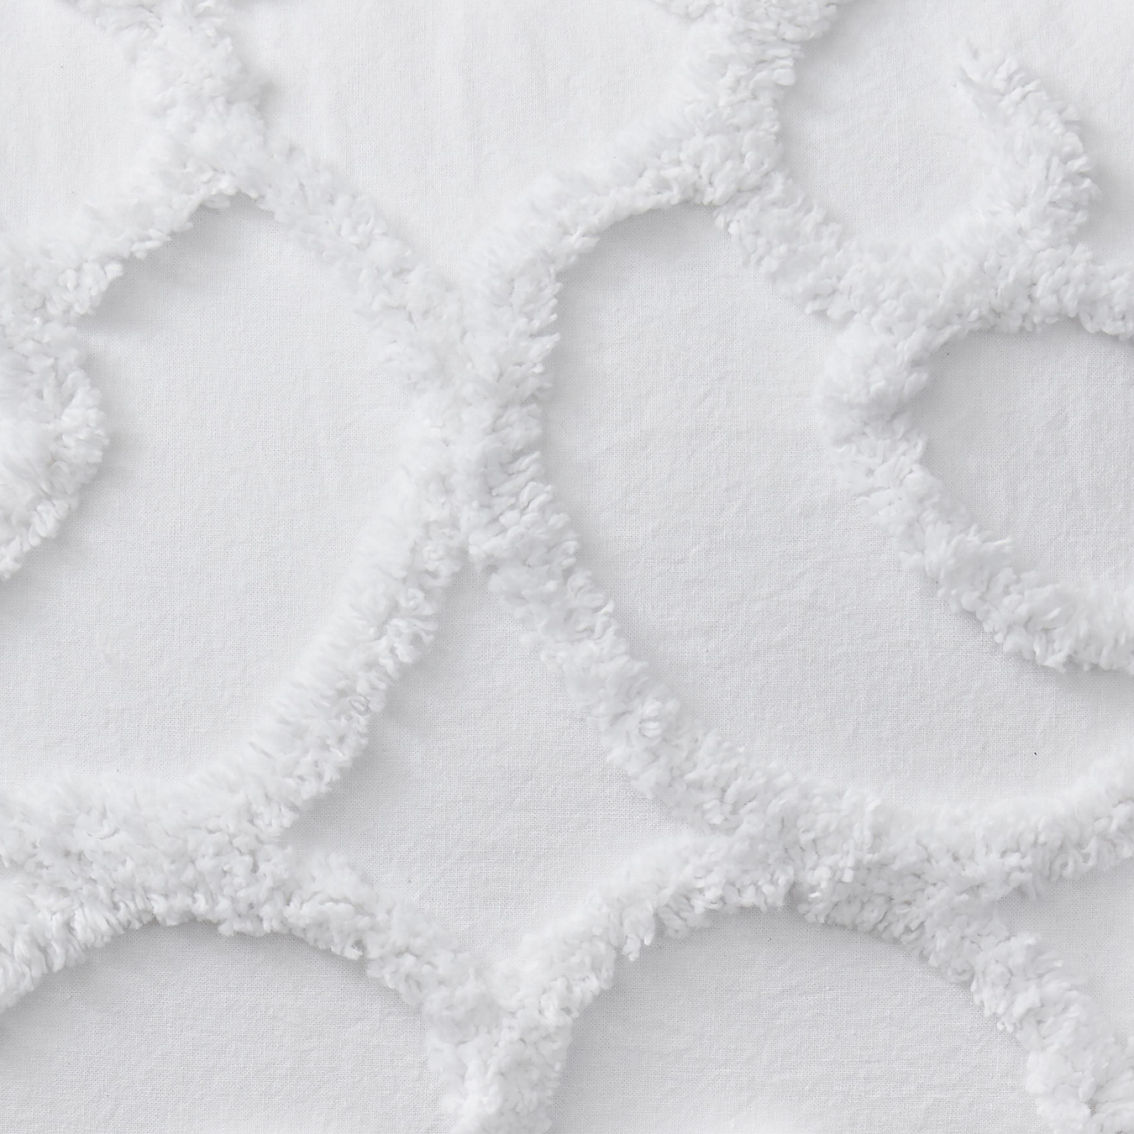 Indigo Ink White Tufted Medallion Cotton Boho Comforter Set - Image 5 of 5